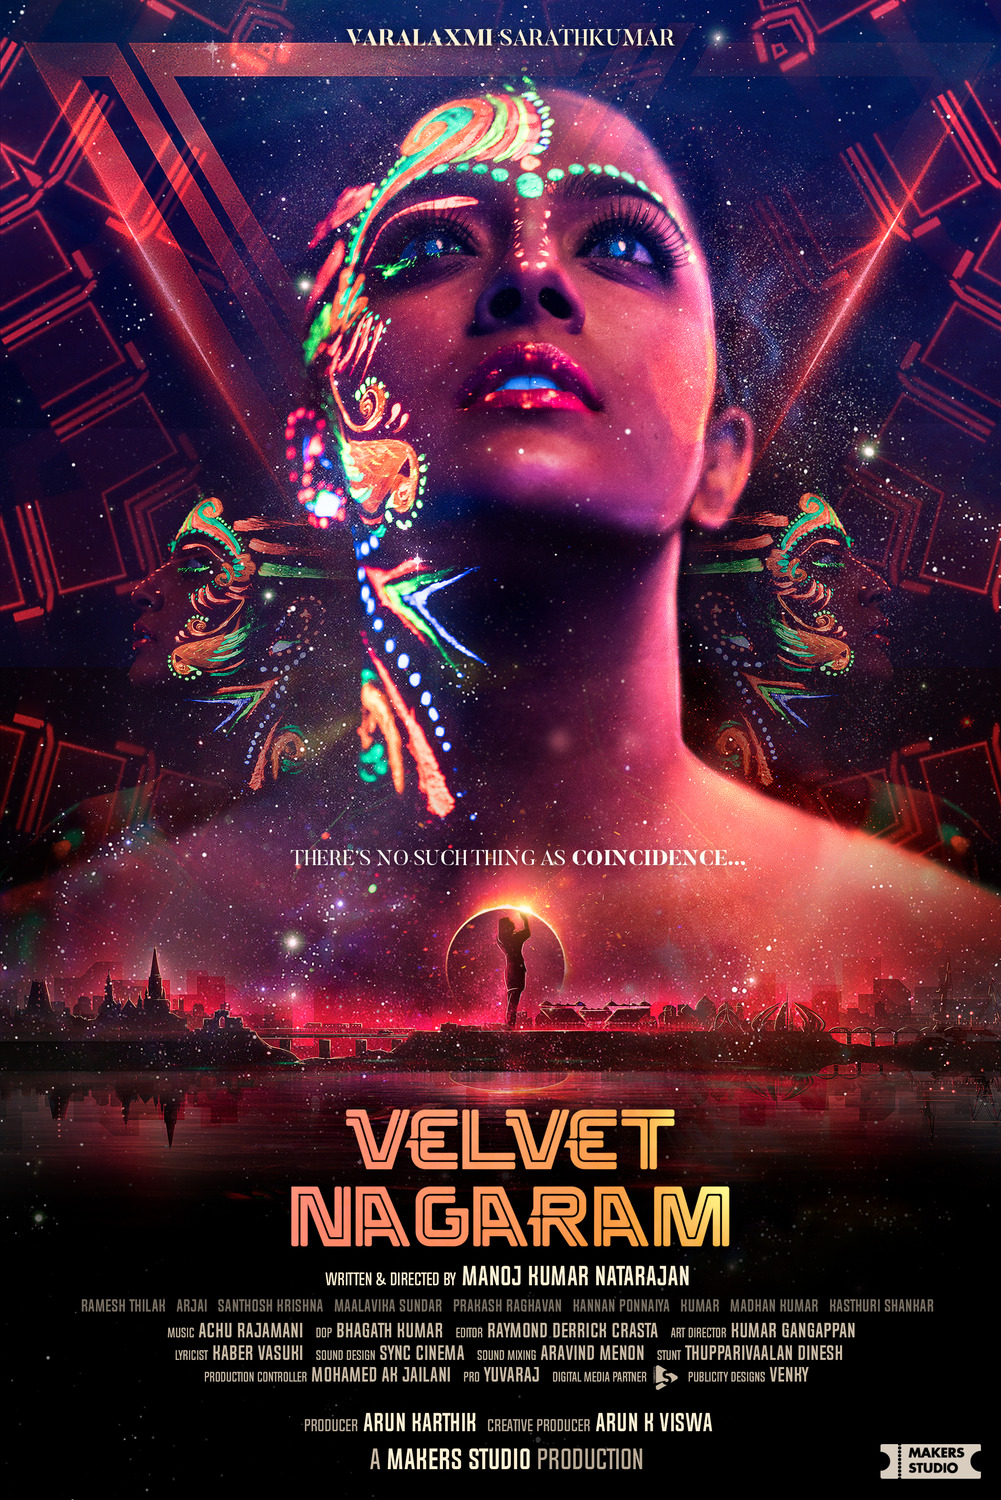 Extra Large Movie Poster Image for Velvet Nagaram 